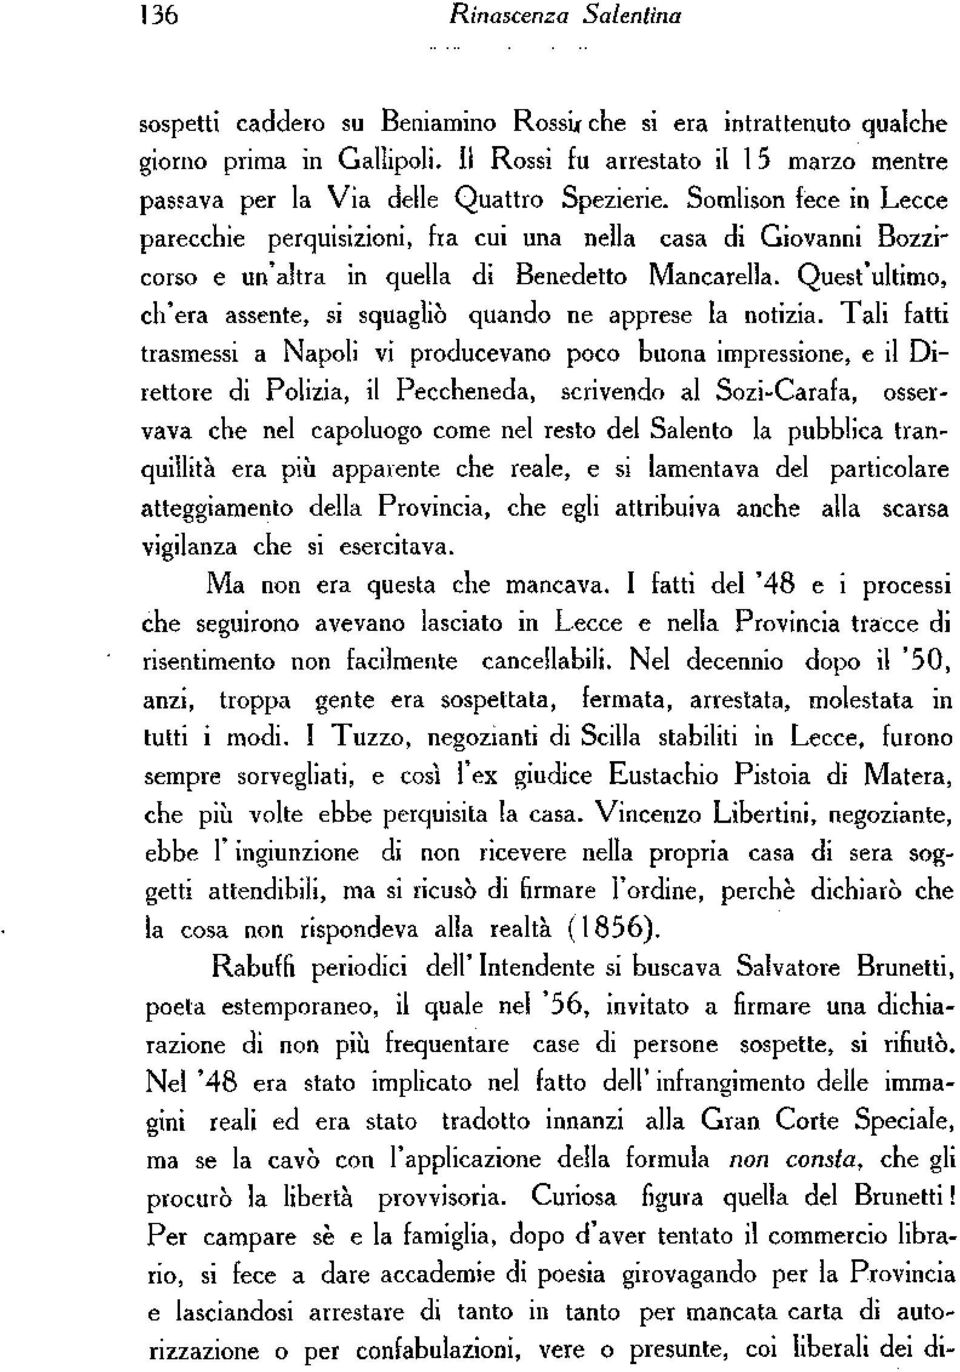 Somlison fece in Lecce parecchie perquisizioni, fra cui una nella casa di Giovanni Bozzicorso e un'altra in quella di Benedetto Mancarella.